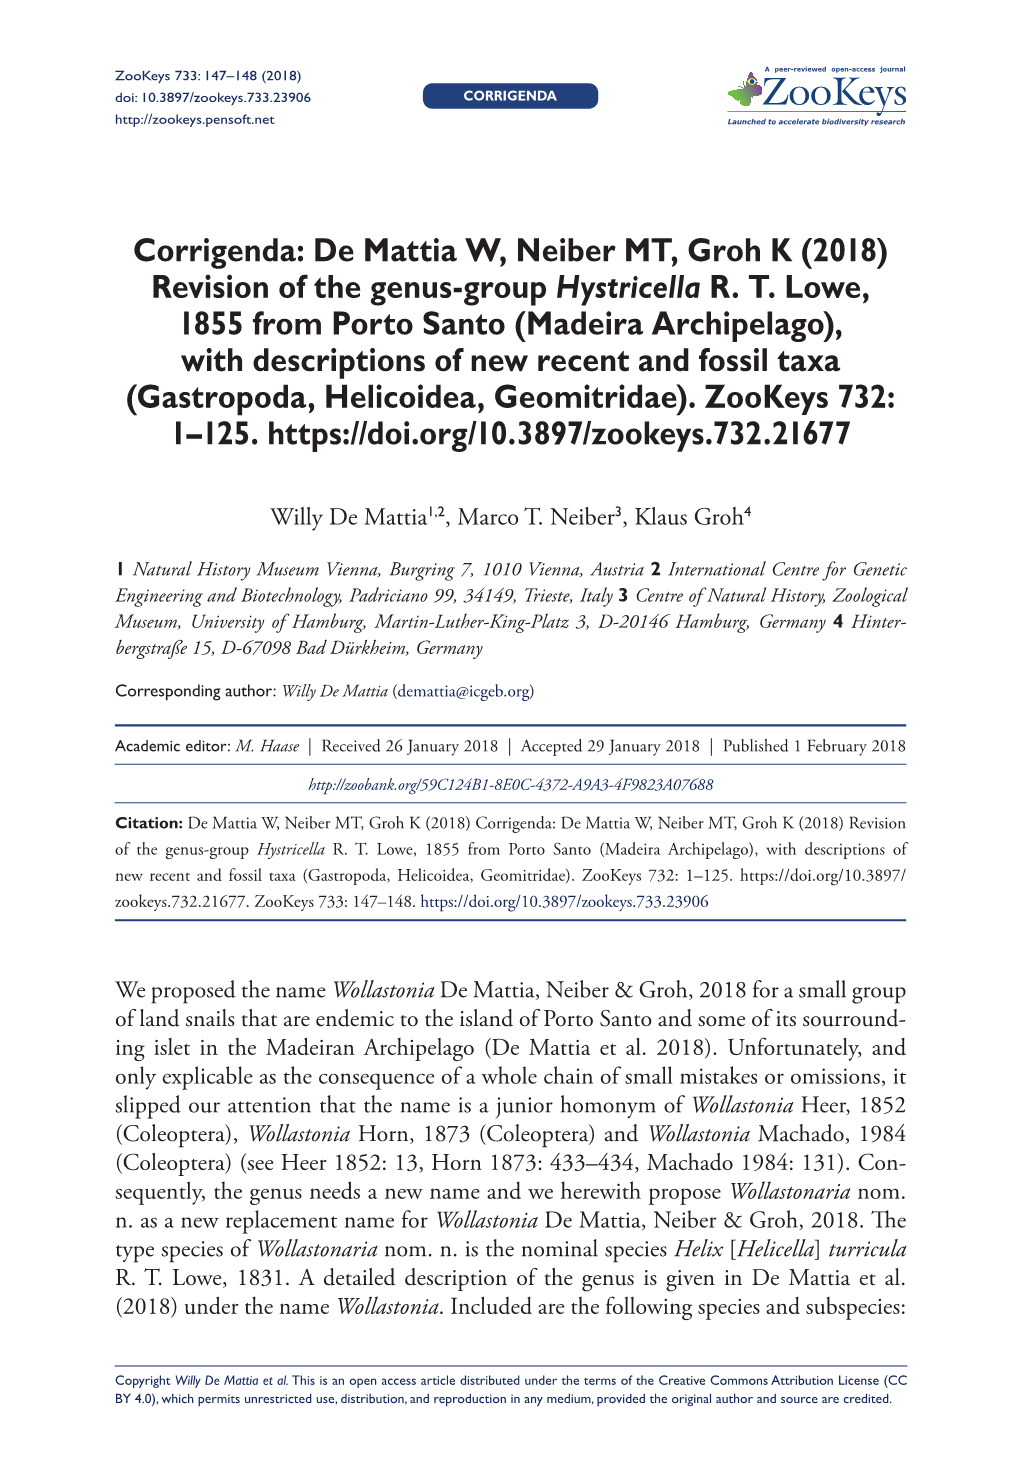 Corrigenda: De Mattia W, Neiber MT, Groh K (2018) Revision of the Genus-Group Hystricella R